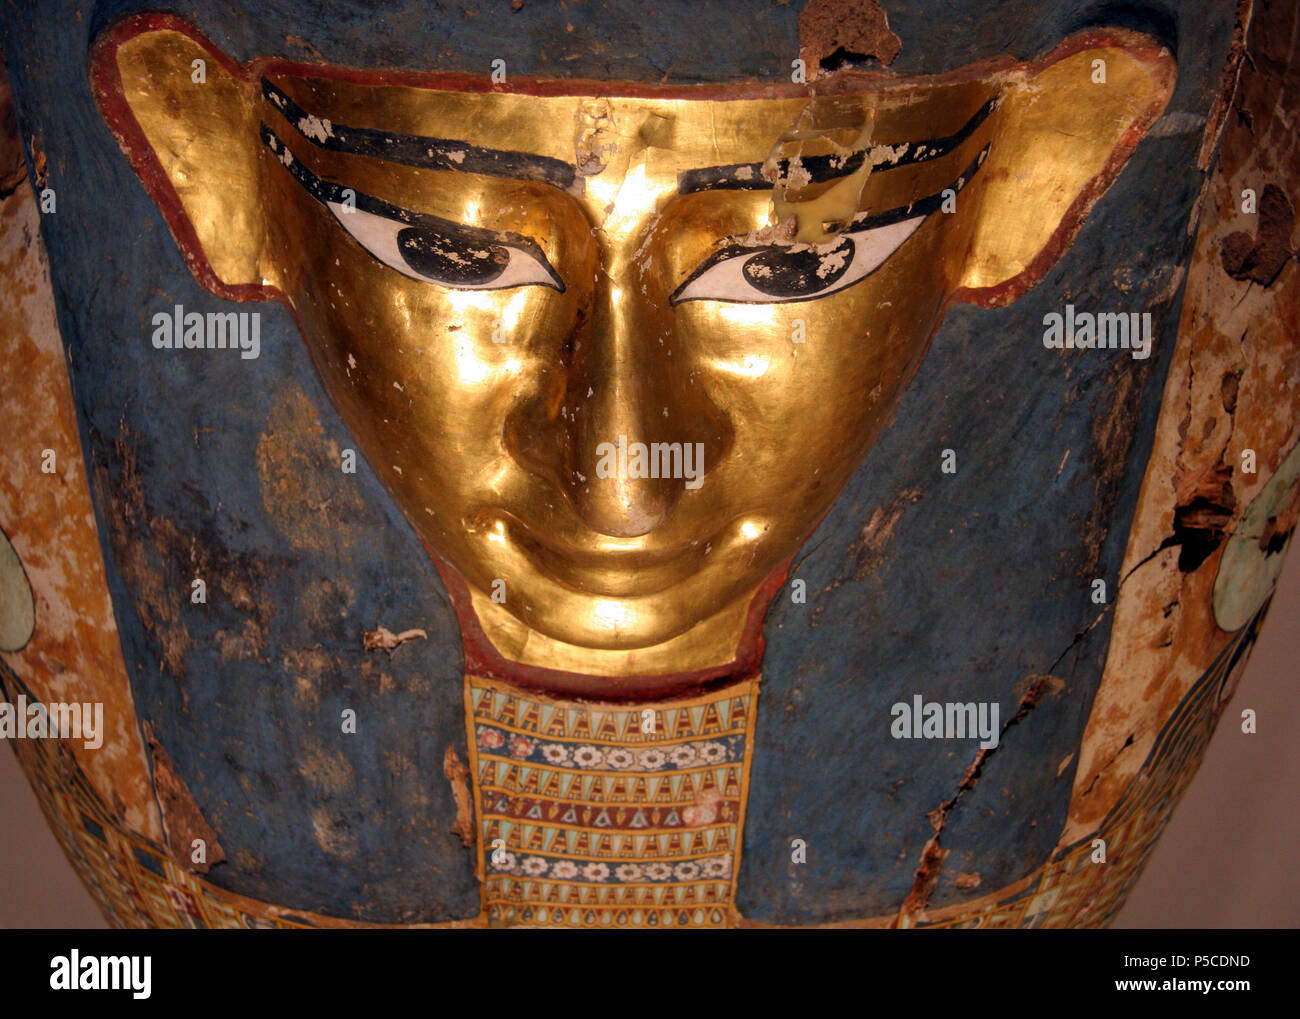 N/A. Inglese: Faccia della mummia bara di Pedusiri, intonacato polychromed, e legno dorato, egiziano tardi dinastici o di inizio periodo greco-romano, circa 500 - 250 e.v. Il Milwaukee Art Museum, Wisconsin 84 x 30 3/4 x 13 3/4 in. (213.36 x 78.11 x 34.93 cm) :Acquisto M1967.20 [1] . Il 31 dicembre 2011. Jonathunder 544 FacePedusiri Foto Stock